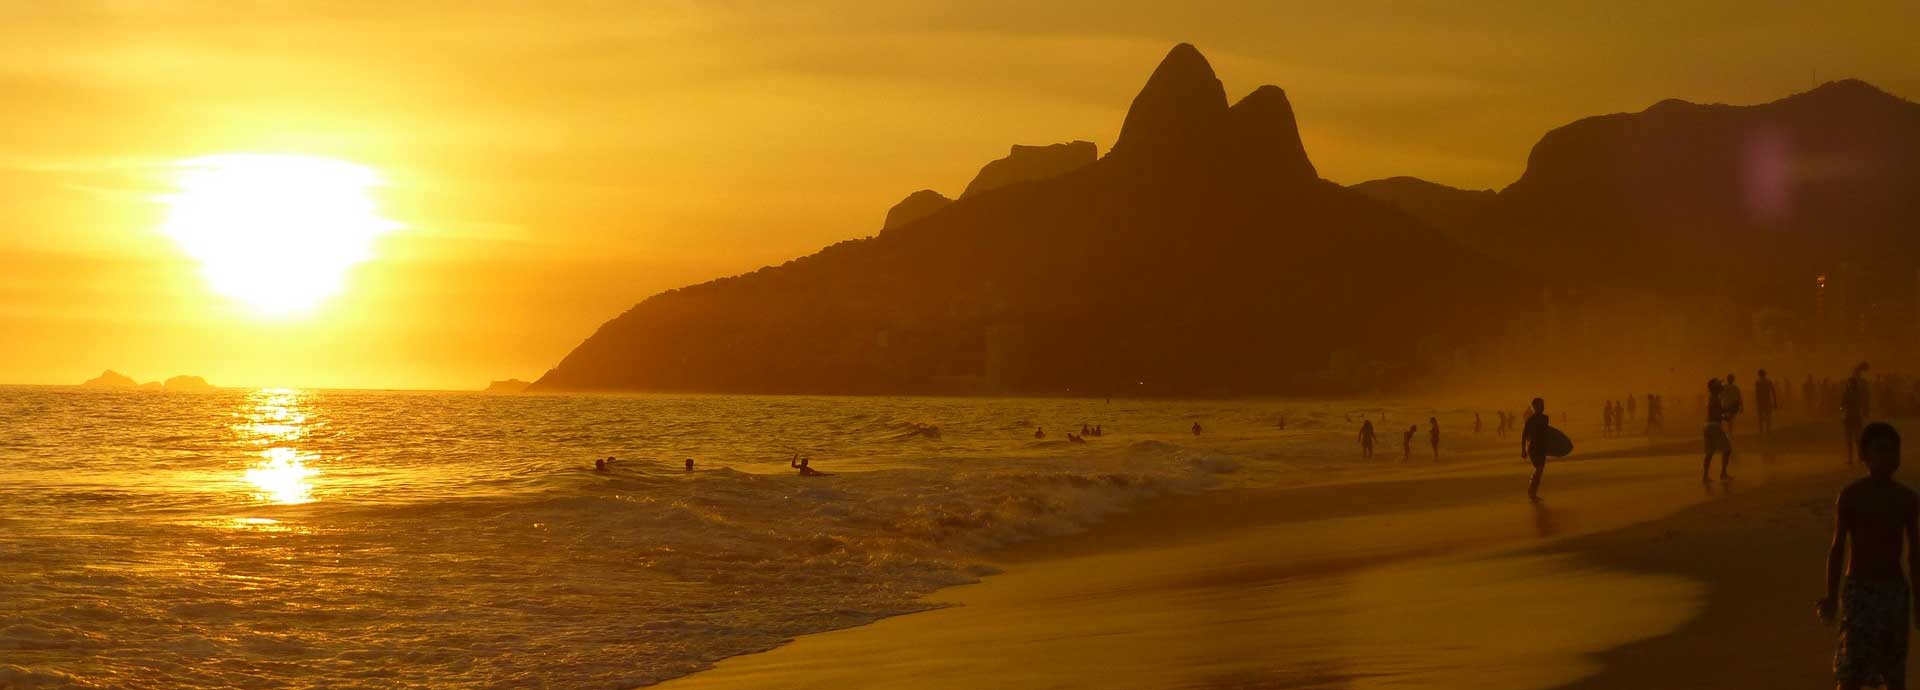 브라질에서 렌터카 - 저렴하고 편안한 브라질 렌터카 여행이라면 렌팅카즈에서!!